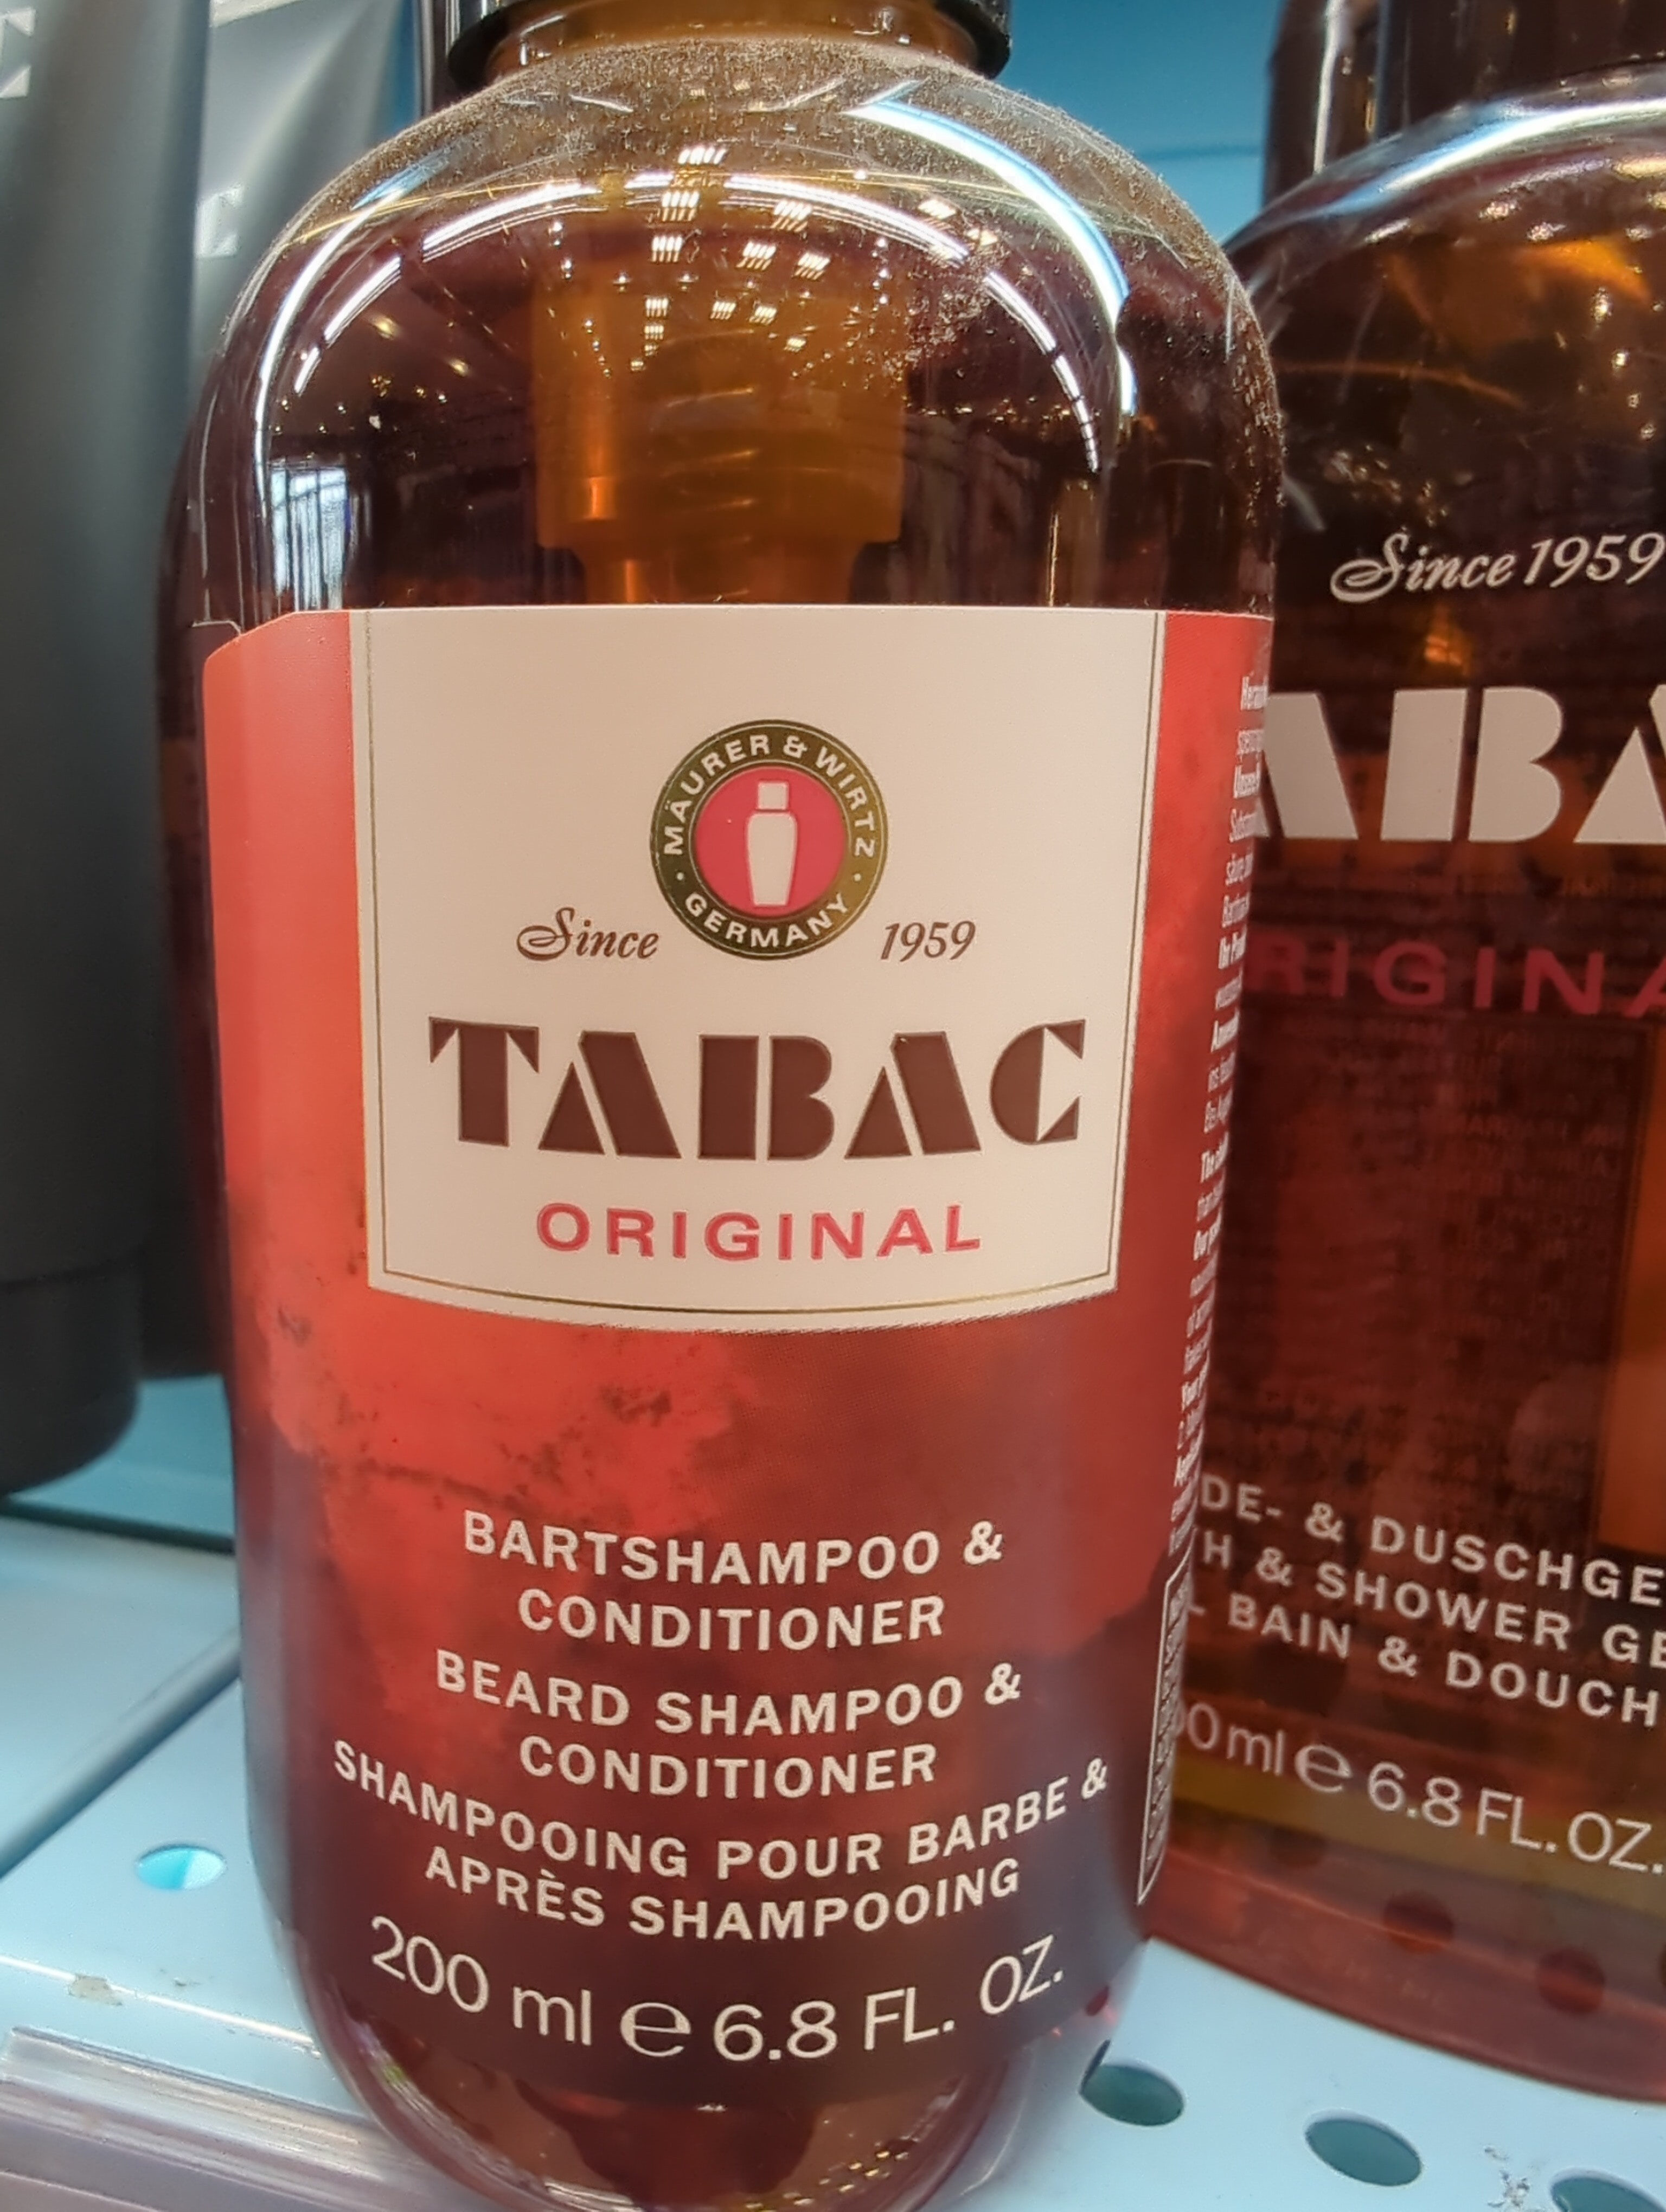 TABAC'S original bartshampoo & conditioner - Product - en